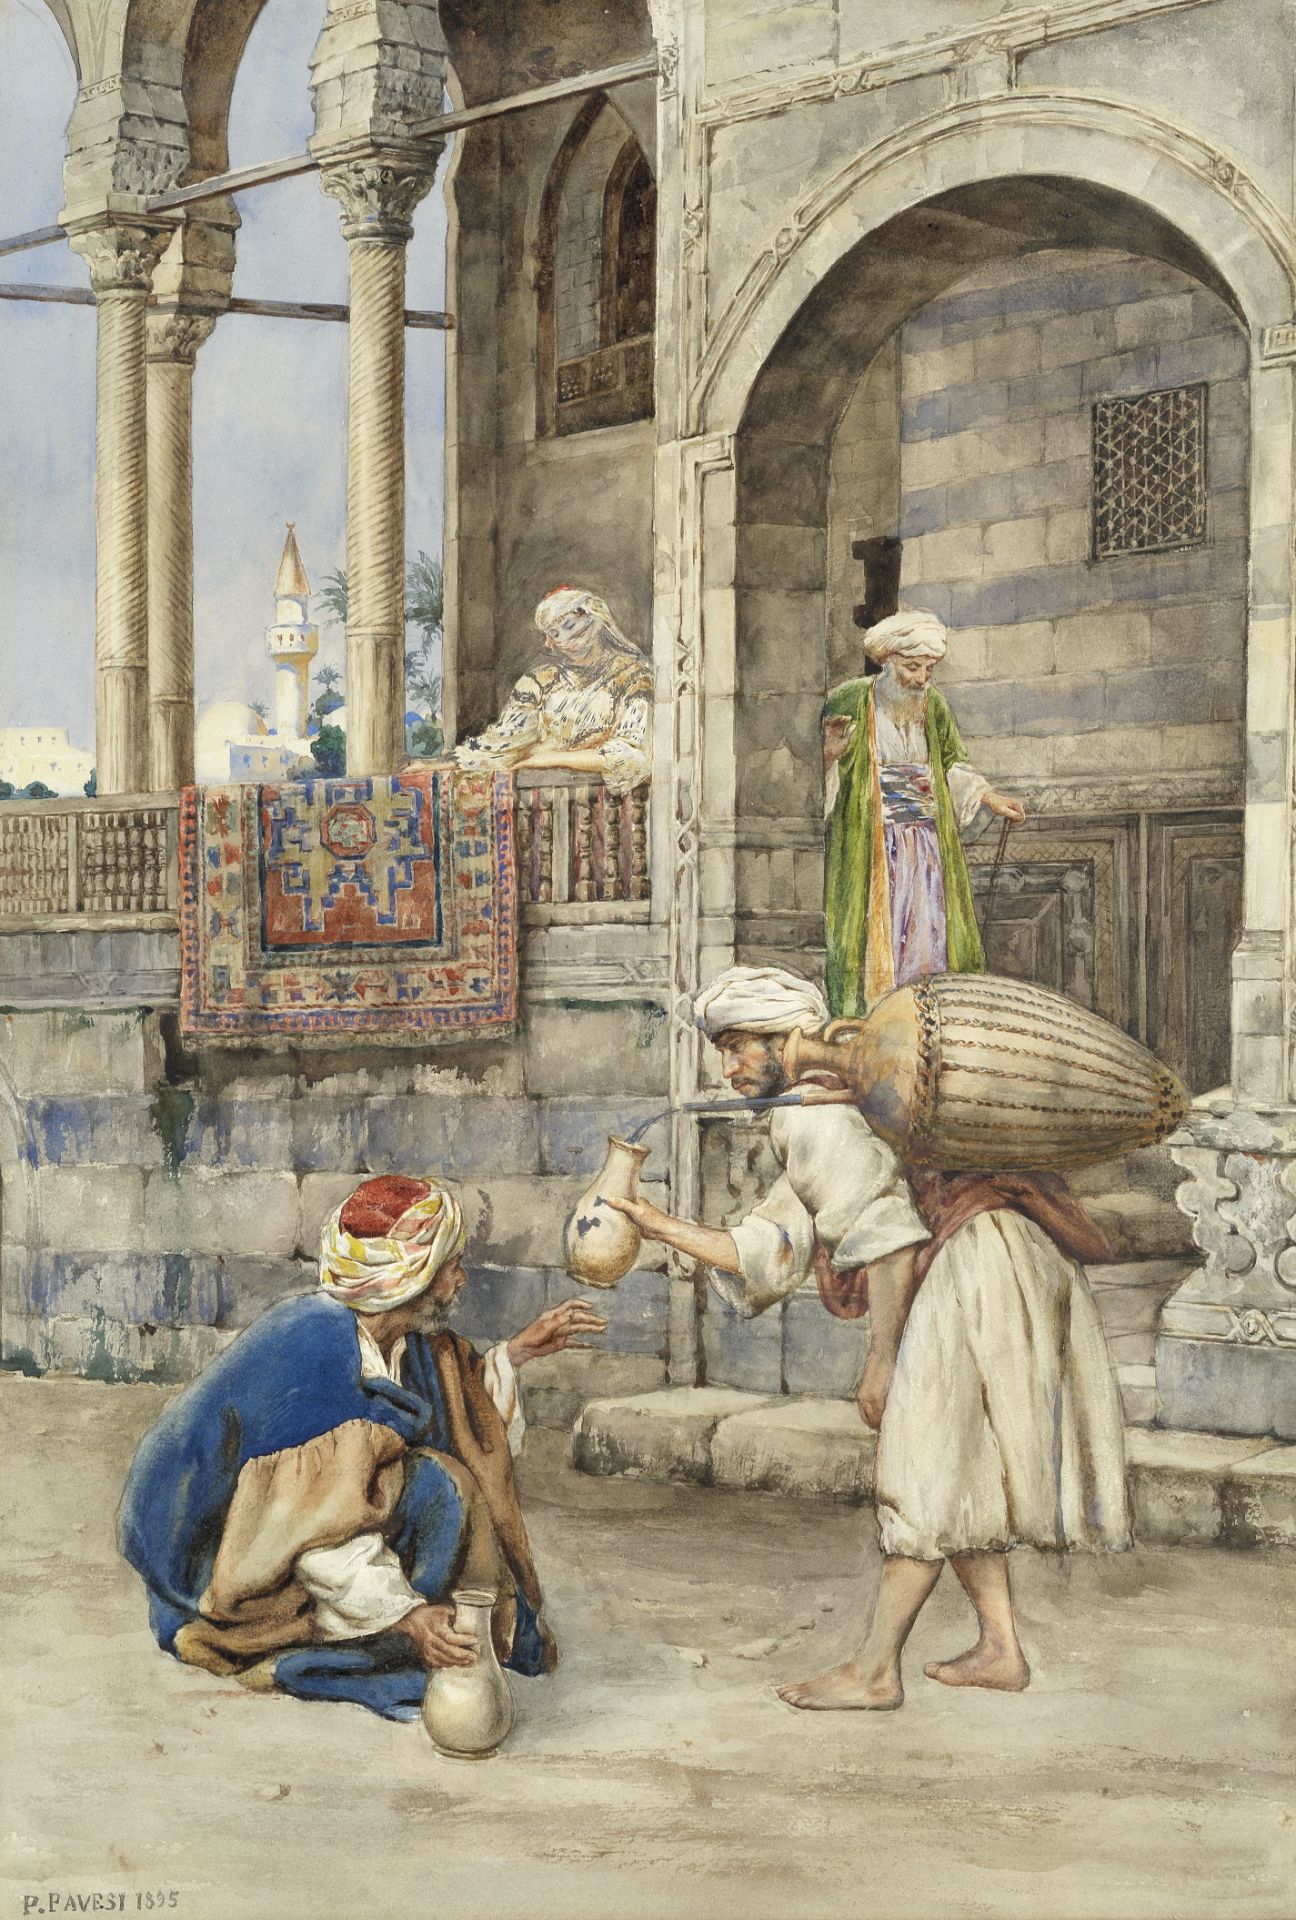 Pietro Pavesi (Italian, 1844-1907) The water seller